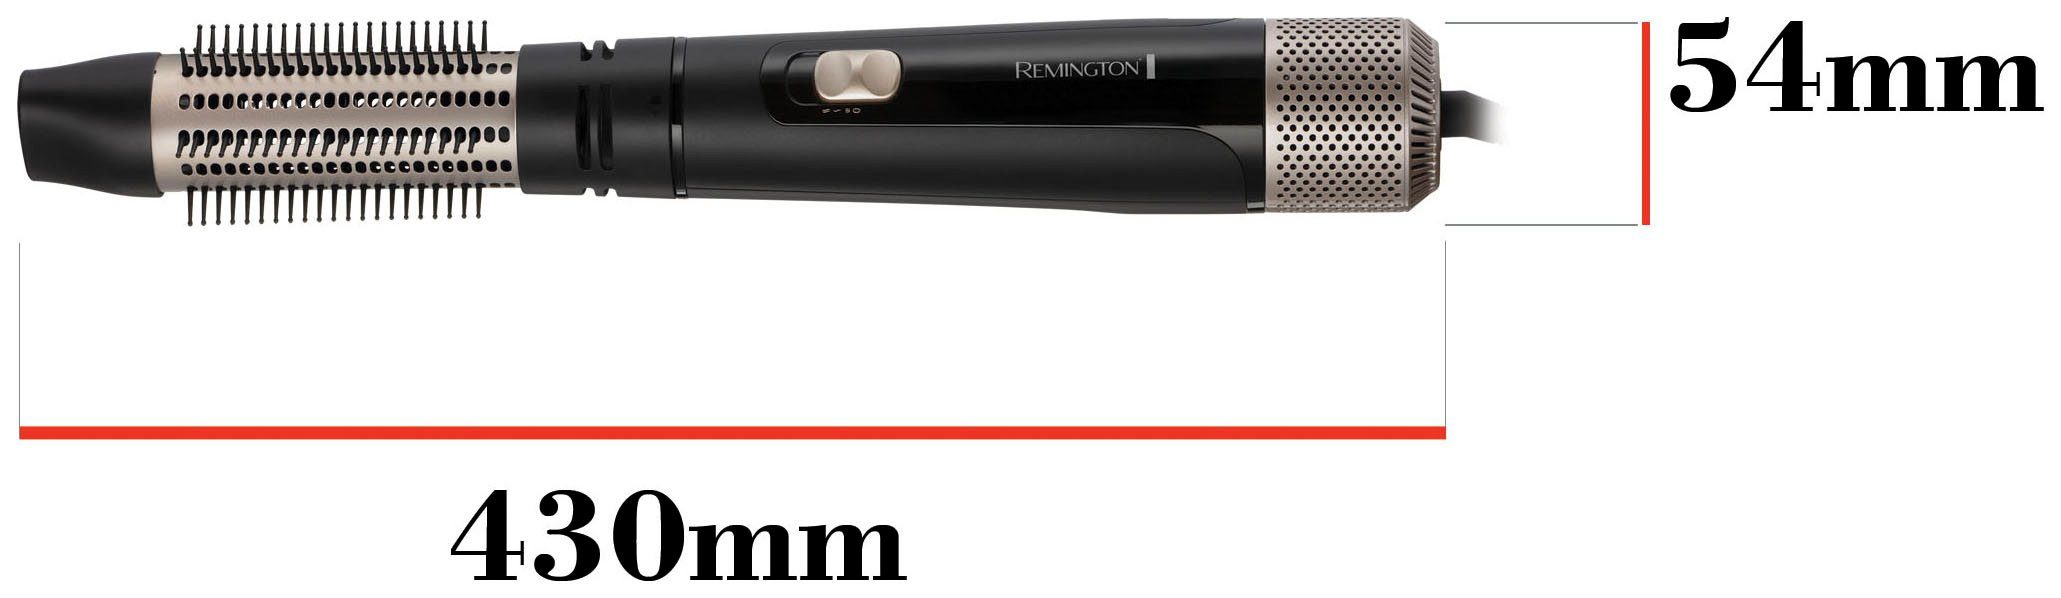 Remington Warmluftbürste Blow & (Airstyler/Rund-&Lockenbürste) Dry für AS7500, Watt 1.000 mittellange Haare Style